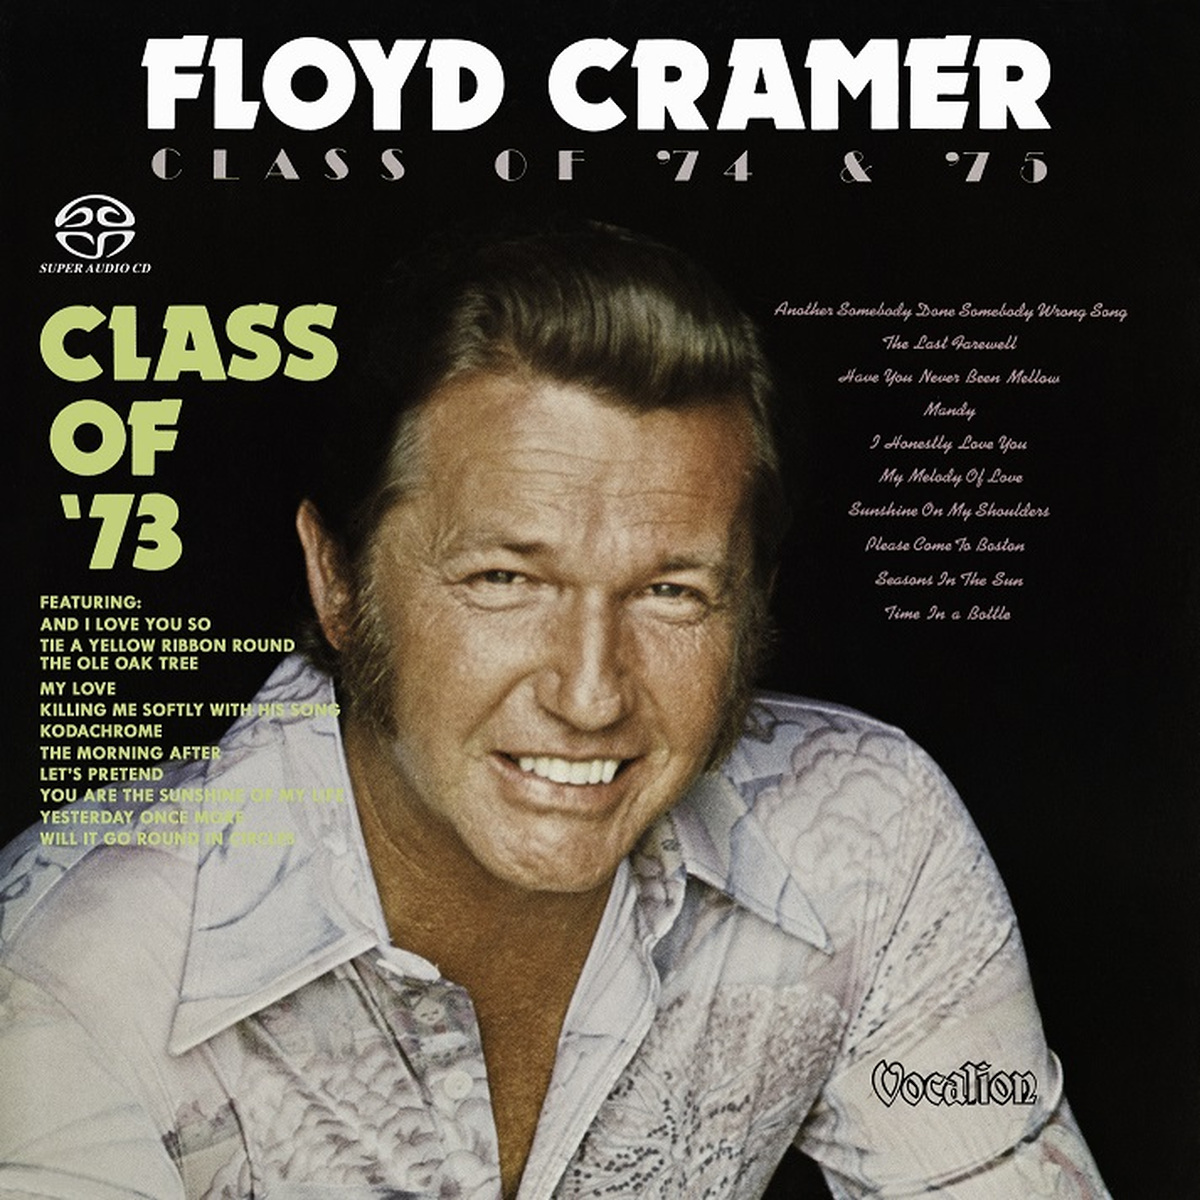 Floyd Cramer - Class Of ’73 & Class Of ’74-’75 (1973/1975) [Reissue 2016] MCH SACD ISO + FLAC 24bit/88,2kHz